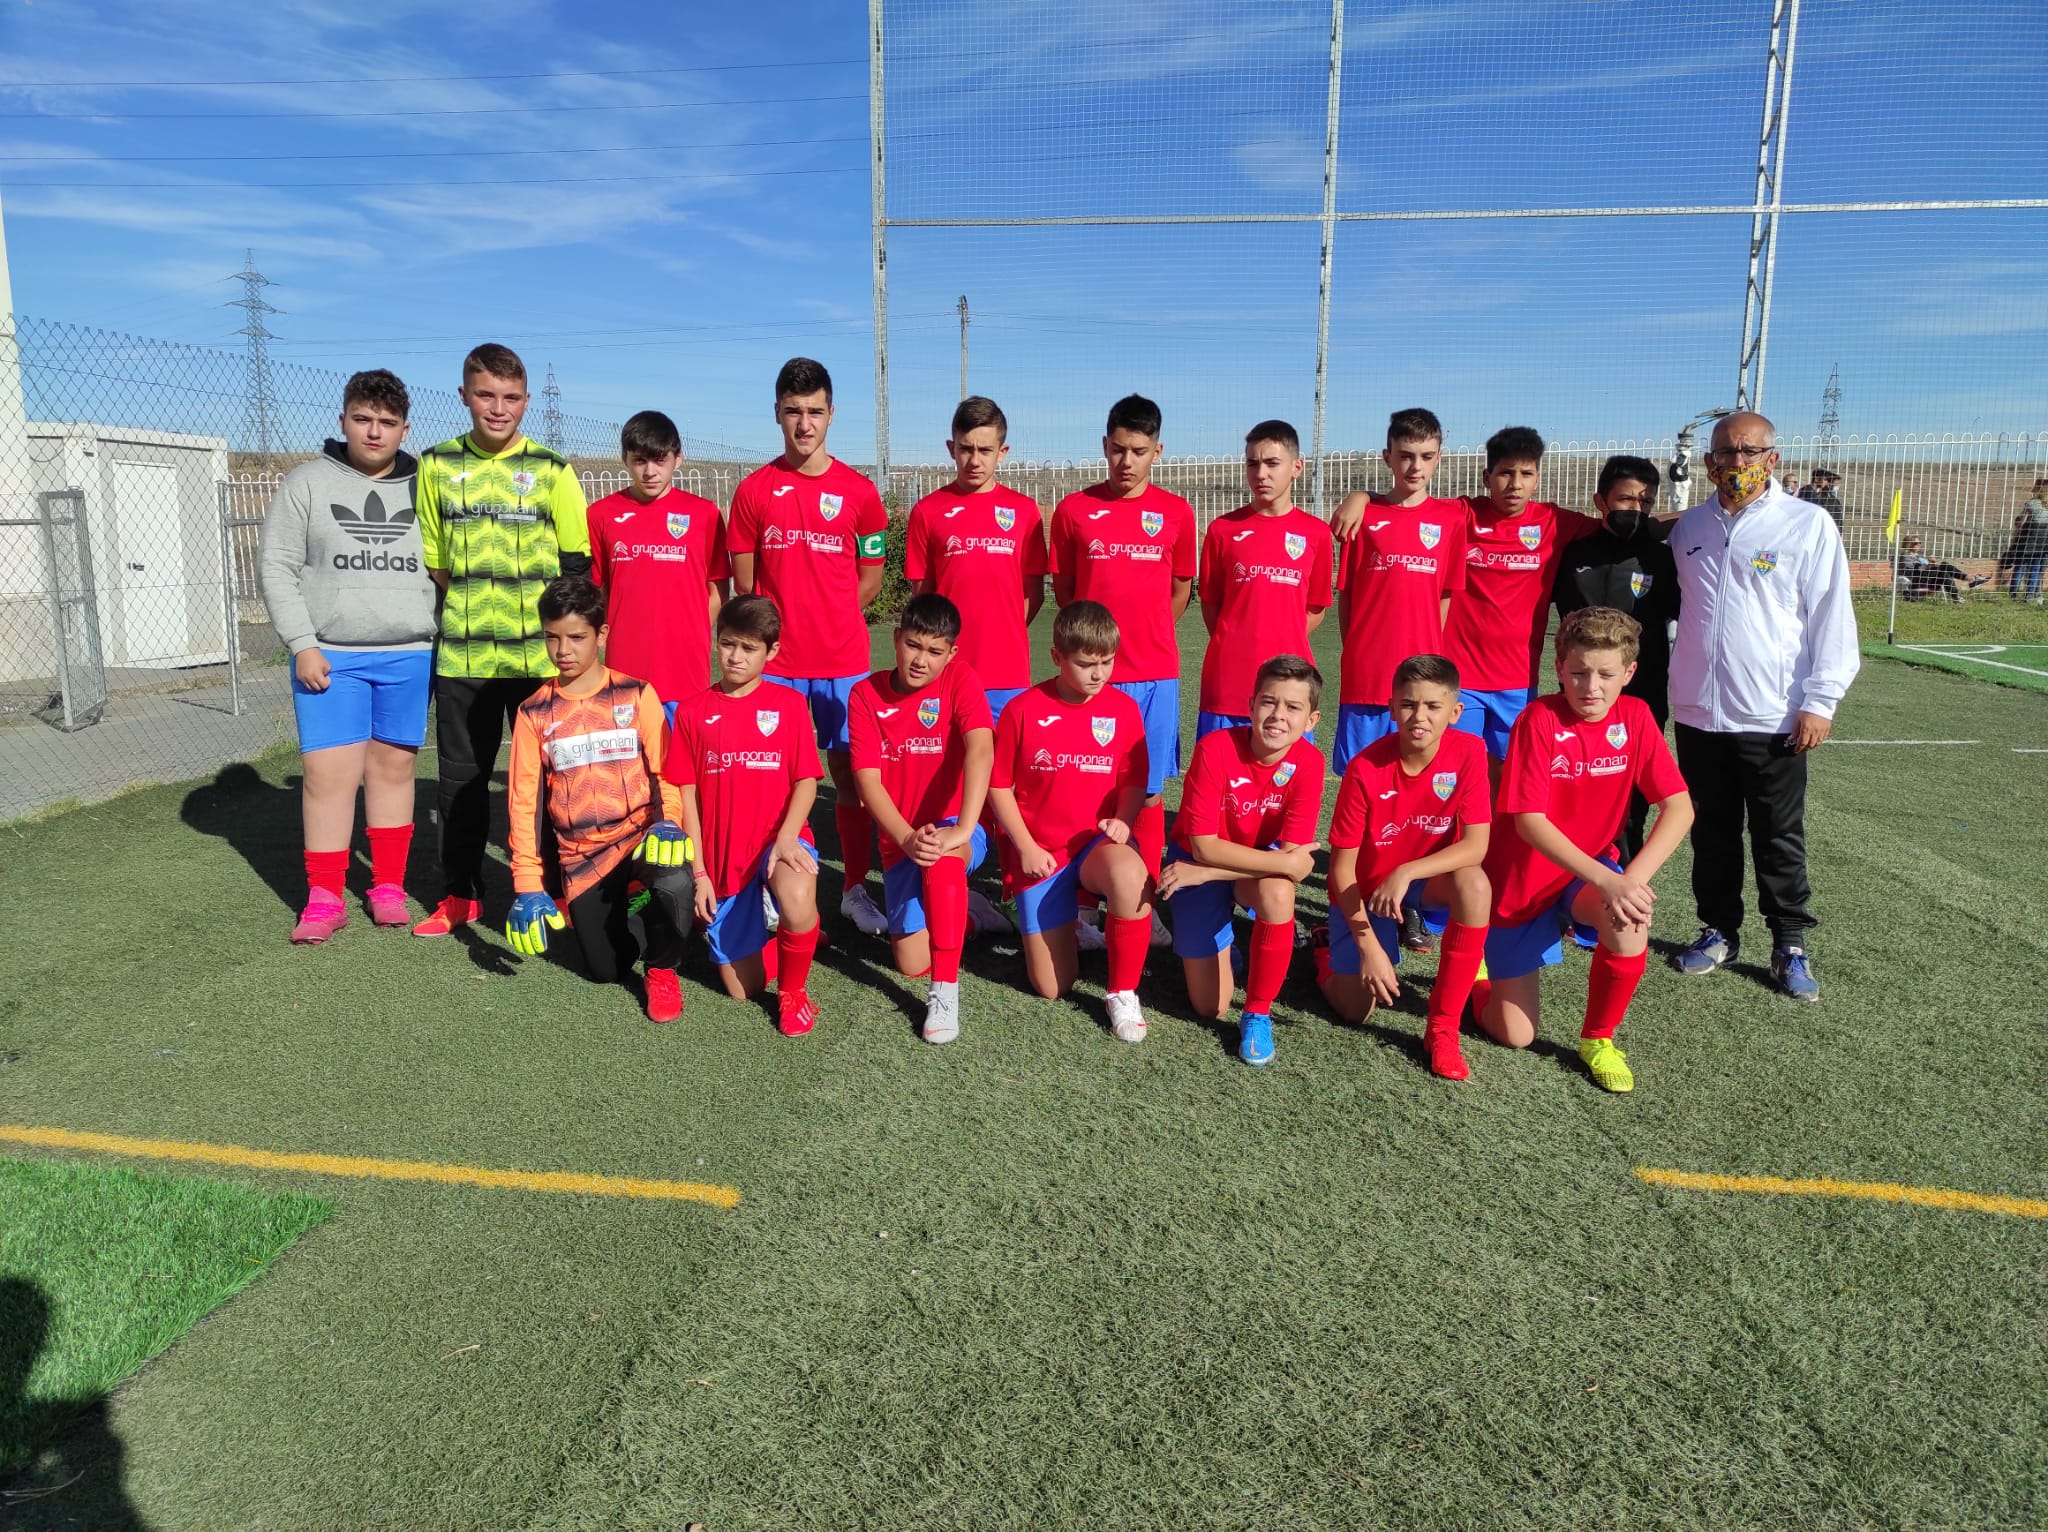 Equipo infantil del Alba de Tormes Club de Fútbol